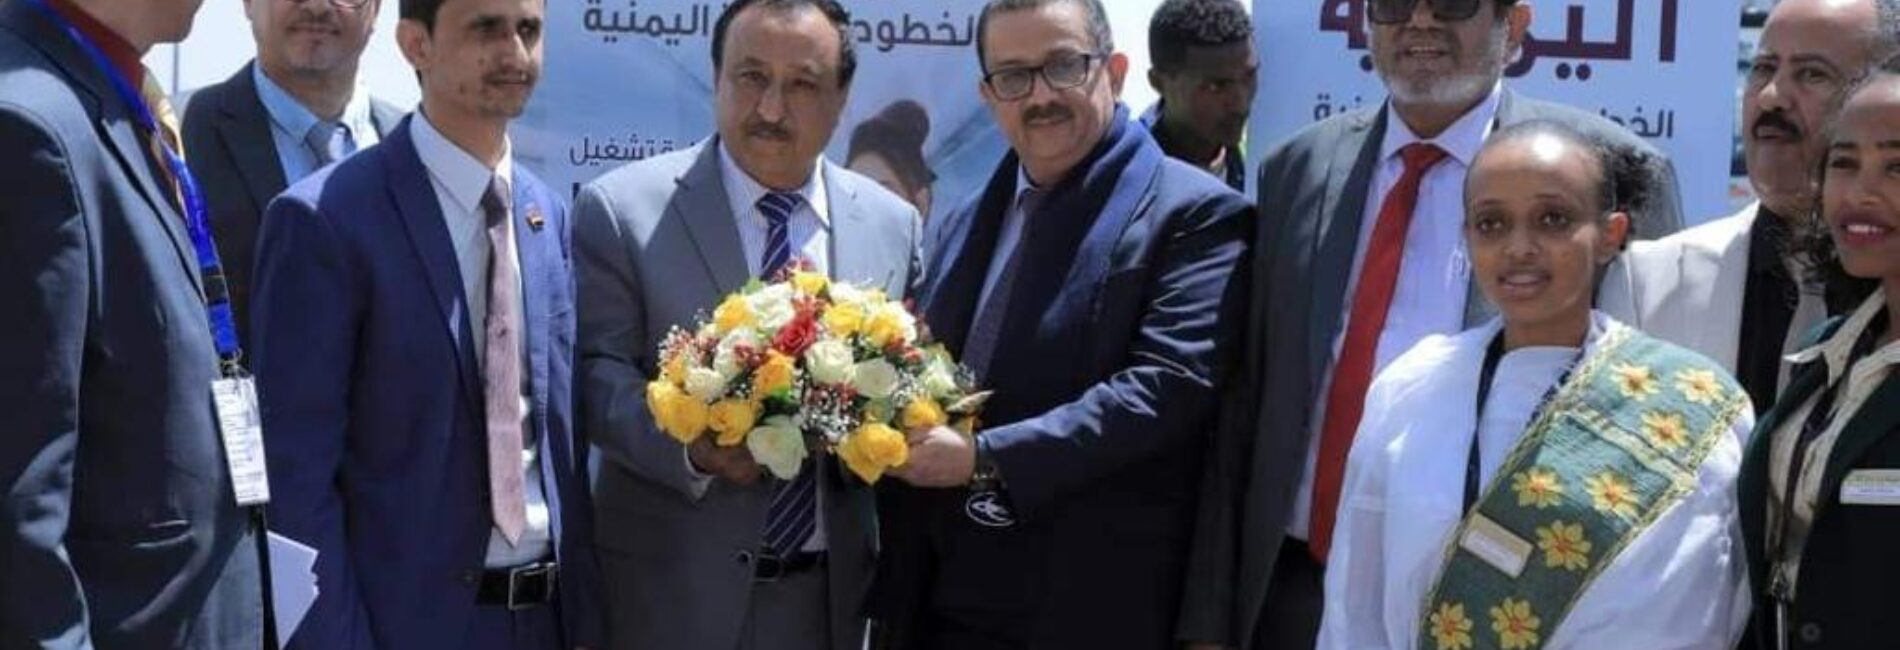 اليمنية تدشن أول رحلاتها إلى أديس أبابا وتوزع هدايا وجوائز للمسافرين على متن الطائرة